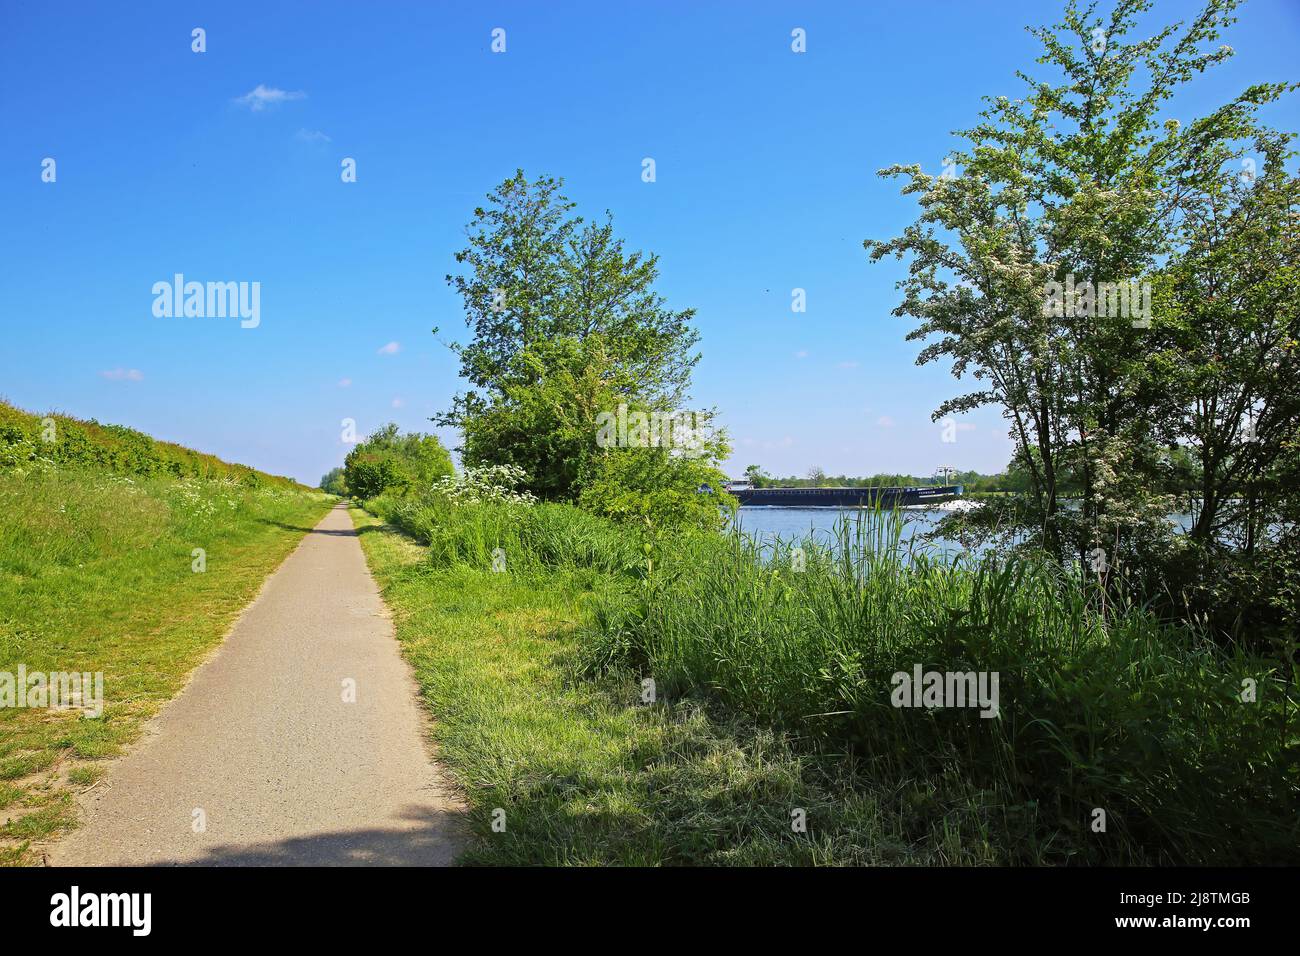 Schöne holländische ländliche Landschaft mit Radweg am Flussufer, landwirtschaftliches Feld, Fluss Maas, blauer Himmel - Maasheggen Biosphärenreservat, Niederlande Stockfoto